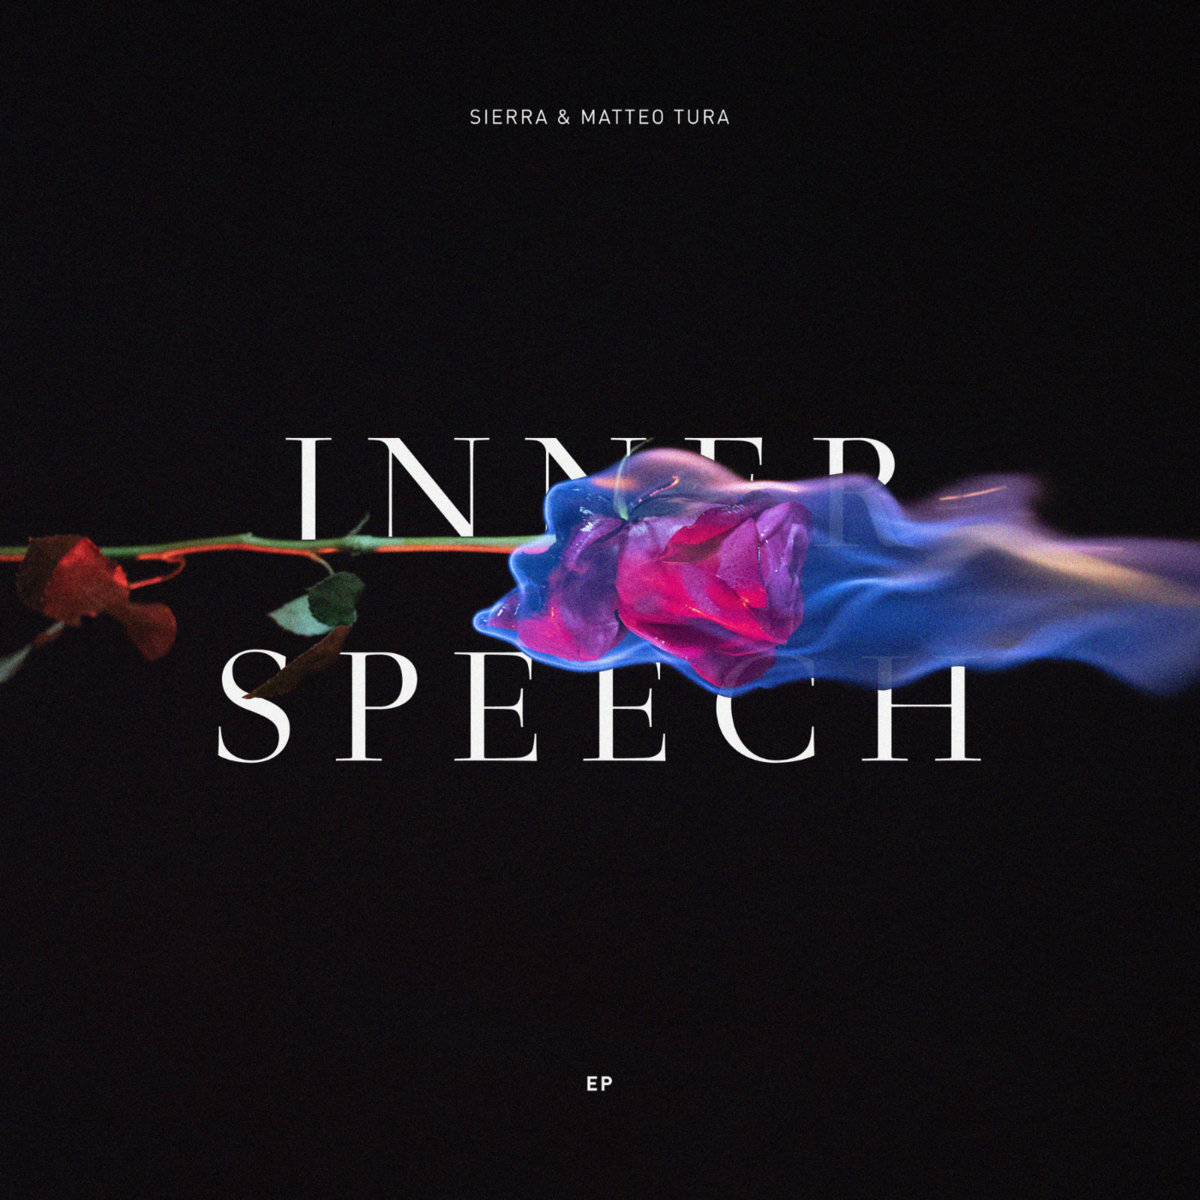 a4013665853 10 - Sierra & Matteo Tura drop “INNER SPEECH” collab EP